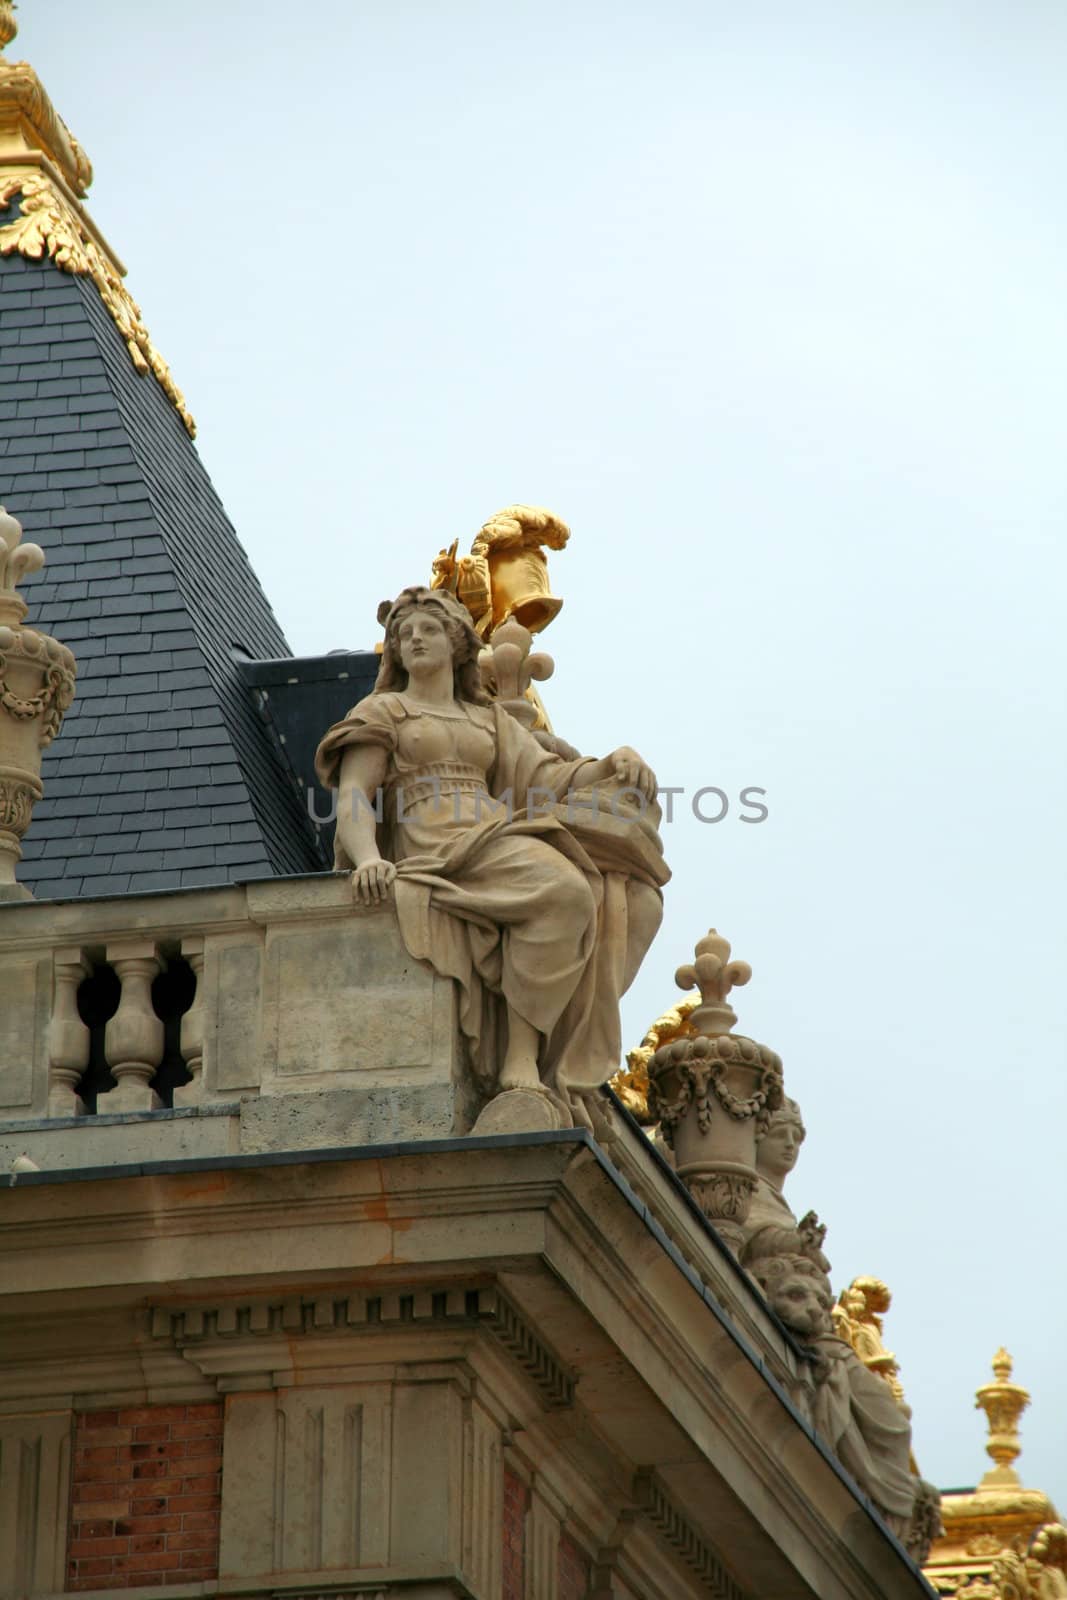 Park and Palace Chateau de Versailles. France. Facade.